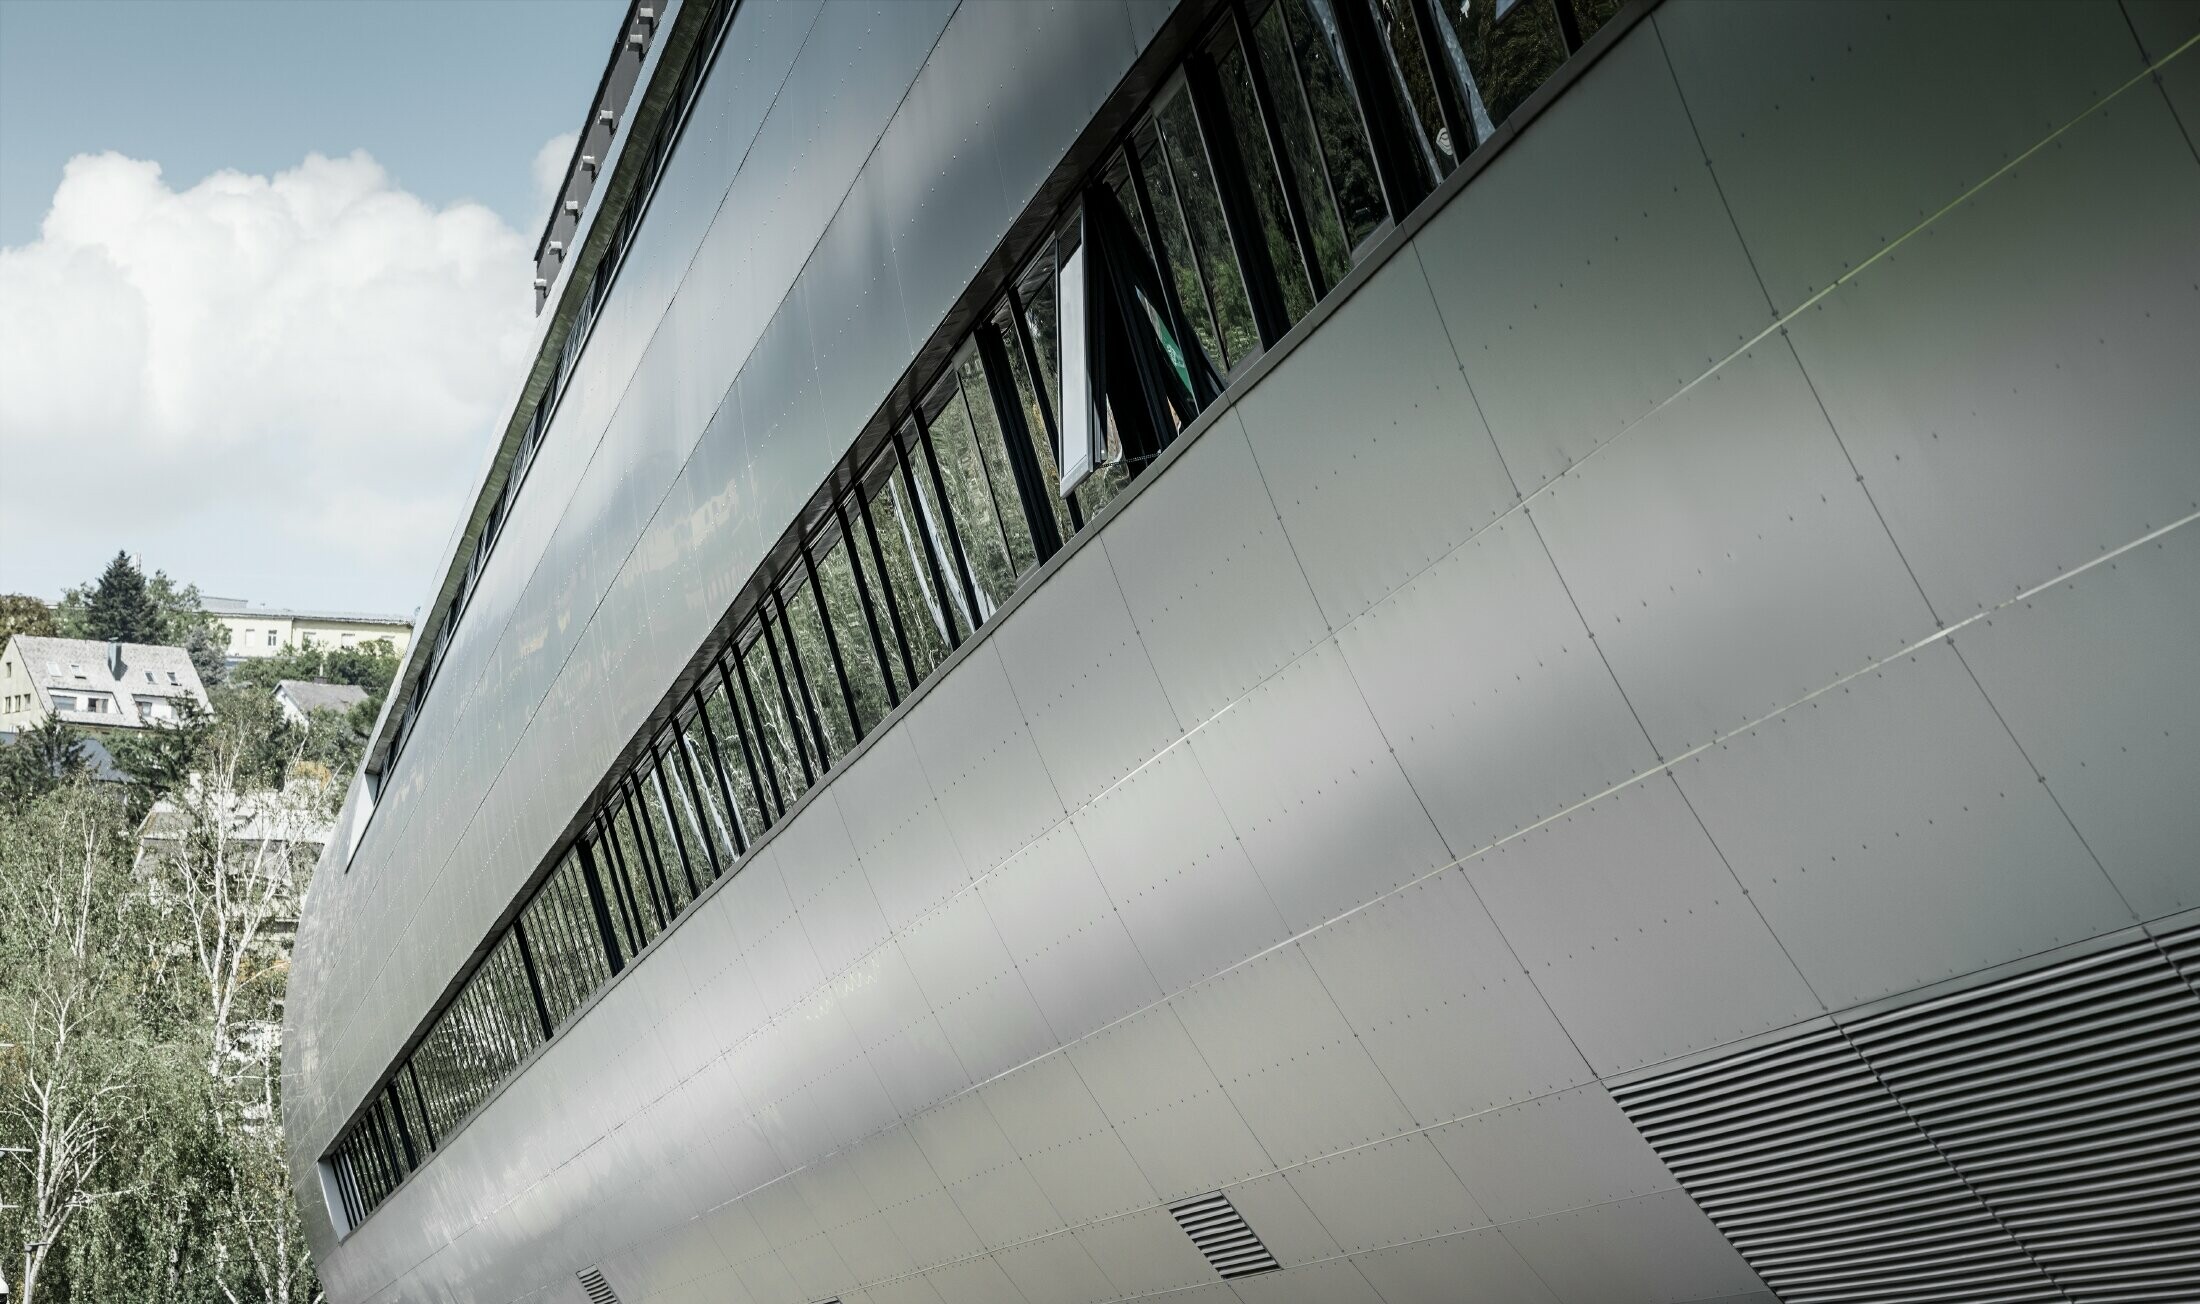 Zijaanzicht van de buis bij het Allianz stadion in Wenen voor SK Rapid; de buis is bekleed met de aluminium composietplaat in zilvermetallic.